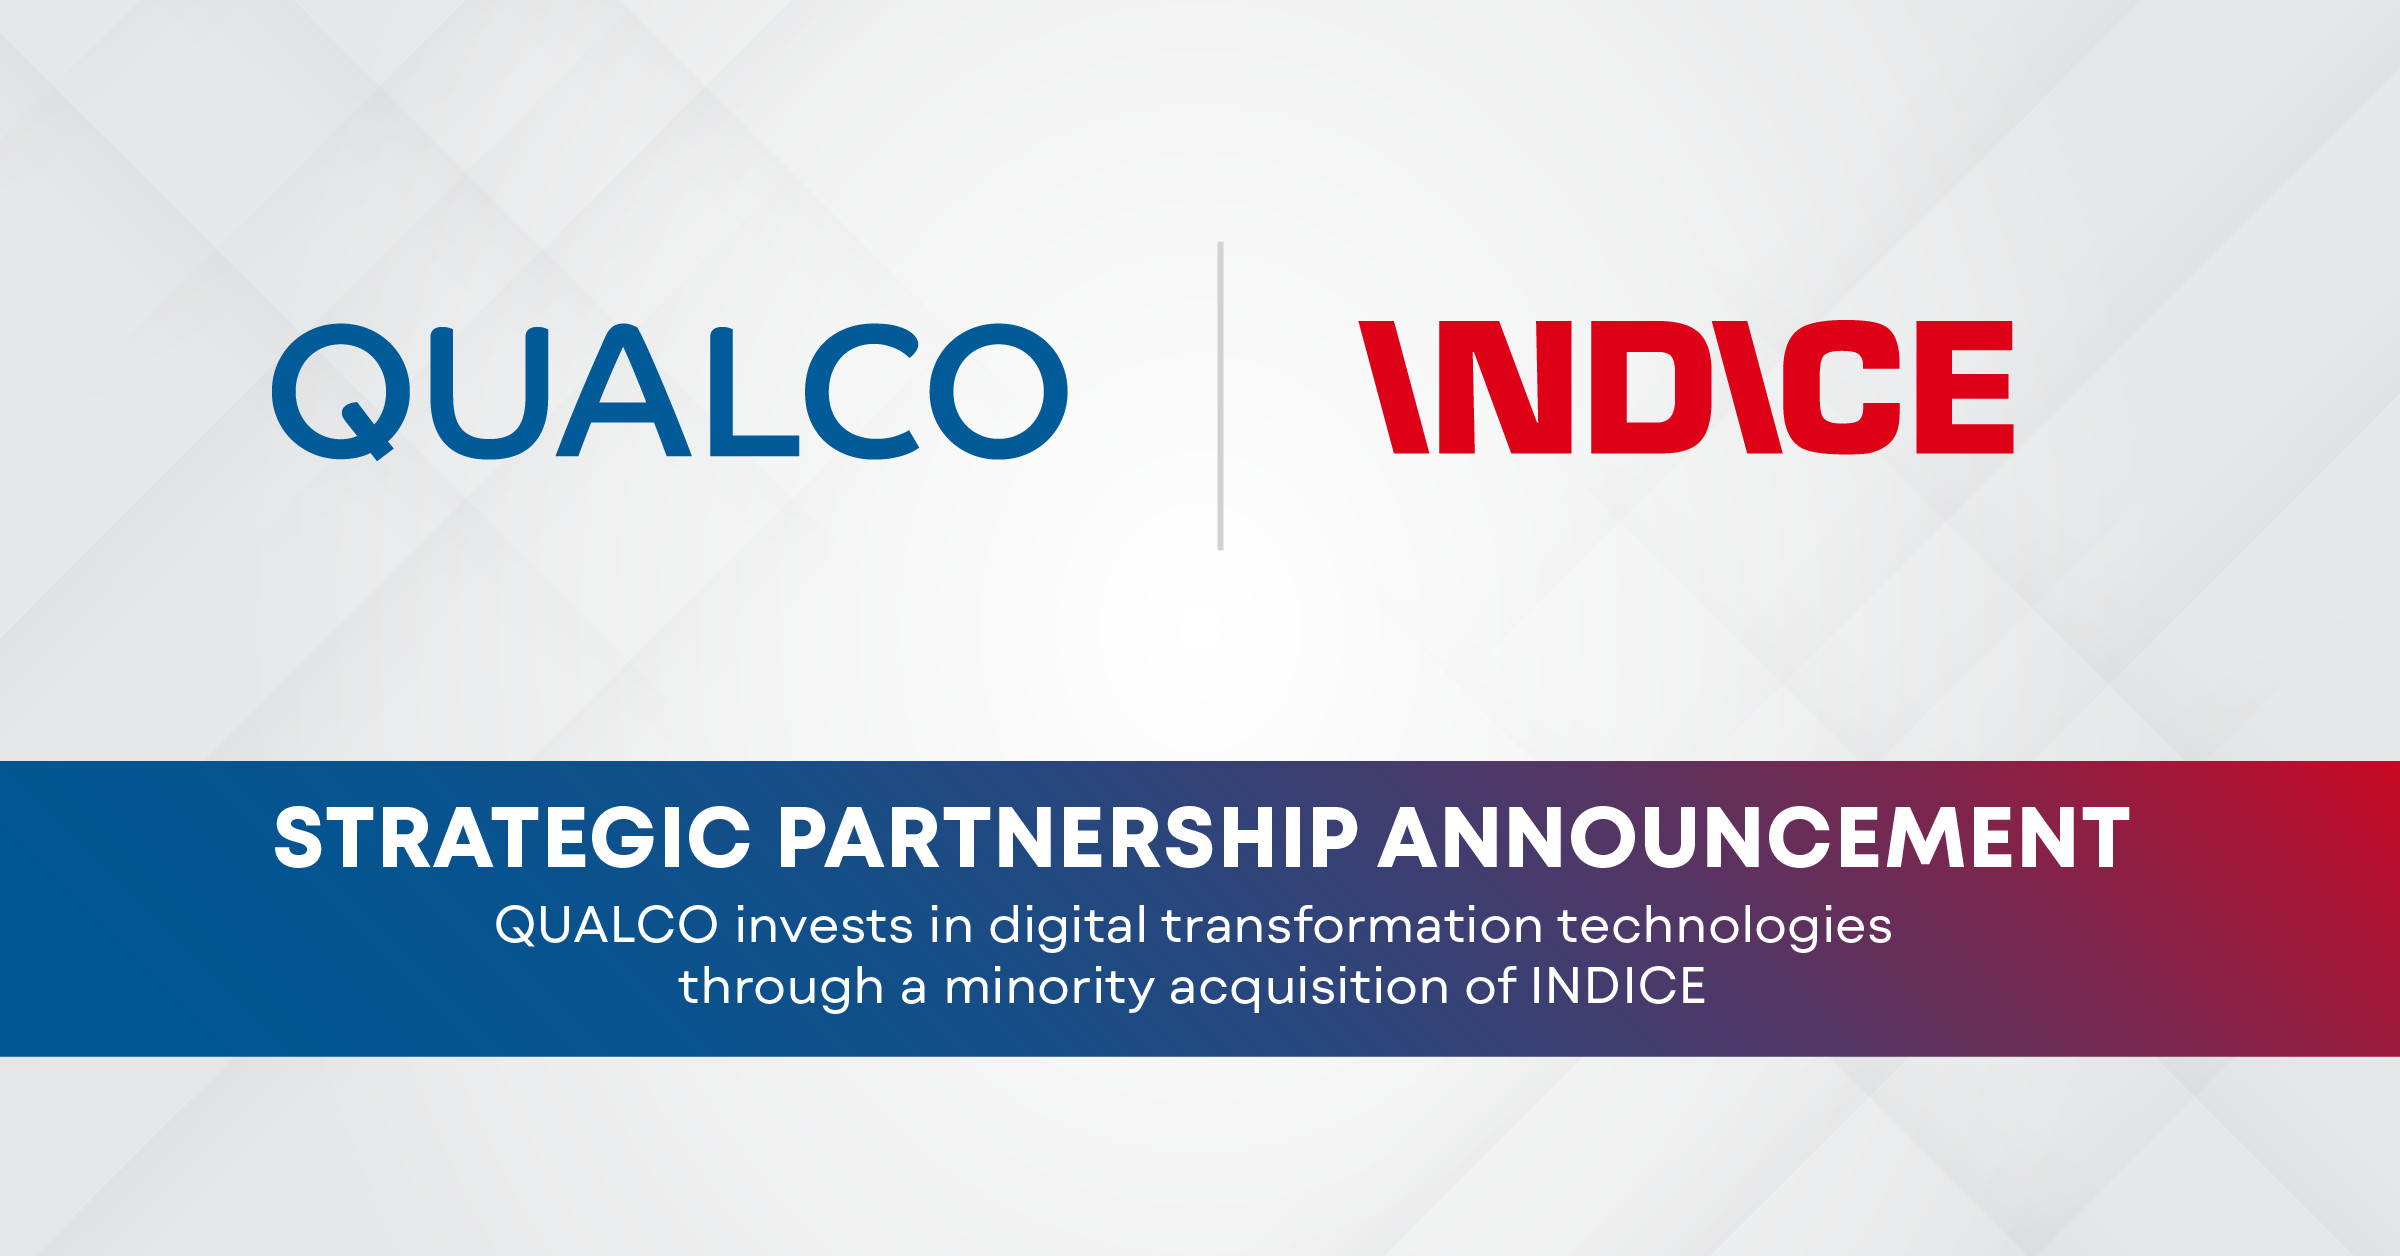 Η QUALCO επενδύει σε τεχνολογίες ψηφιακού μετασχηματισμού μέσω της εξαγοράς μειοψηφικού ποσοστού της INDICE